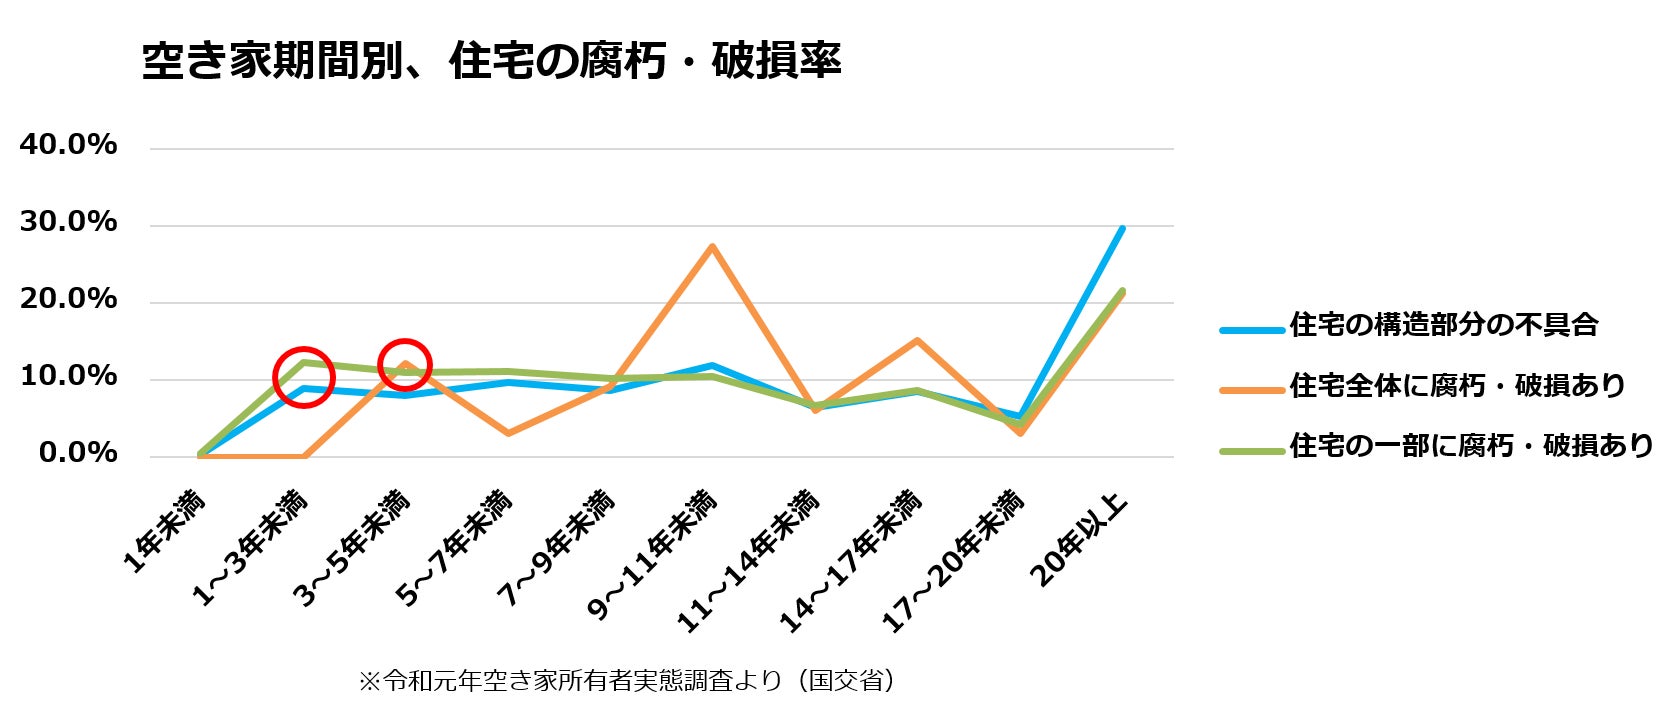 中古住宅買取再生業界No1*¹のカチタスが、未活用空き家率が高い奈良県内に初めて「奈良店」オープンのサブ画像4